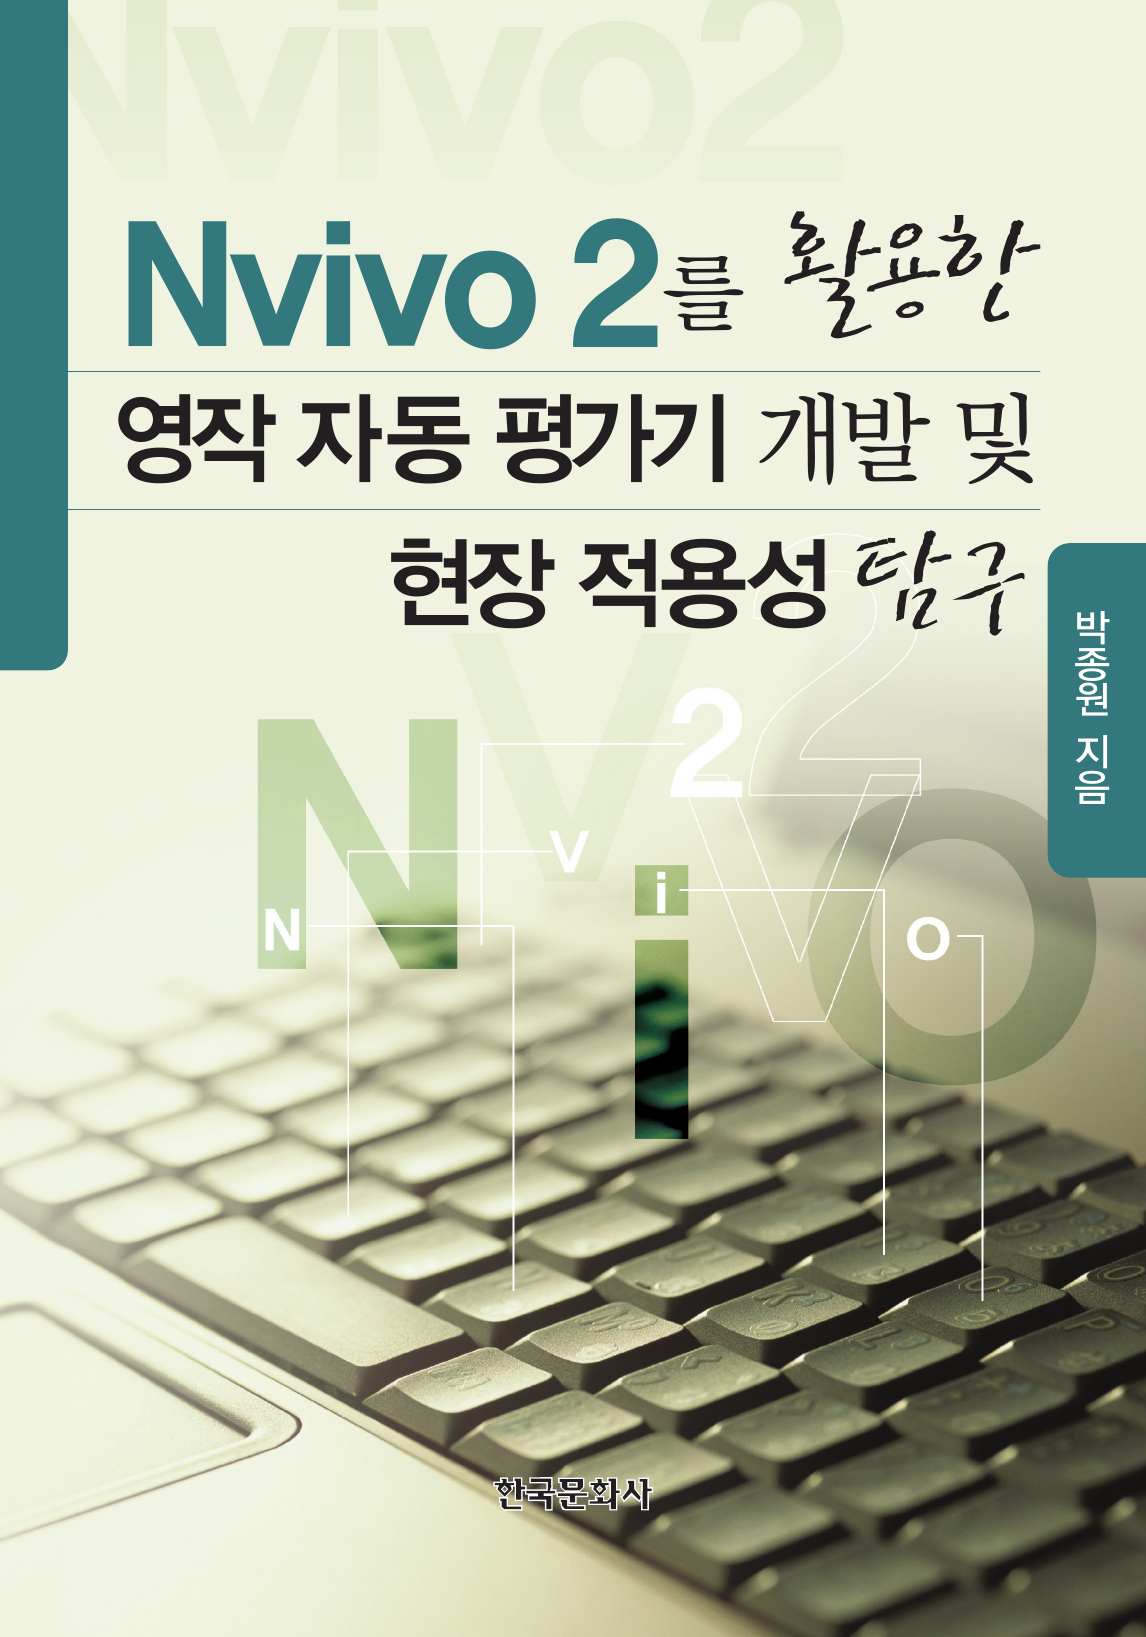 NVIVO 2를 활용한 영작 자동 평가기 개발 및 현장 적용성 탐구